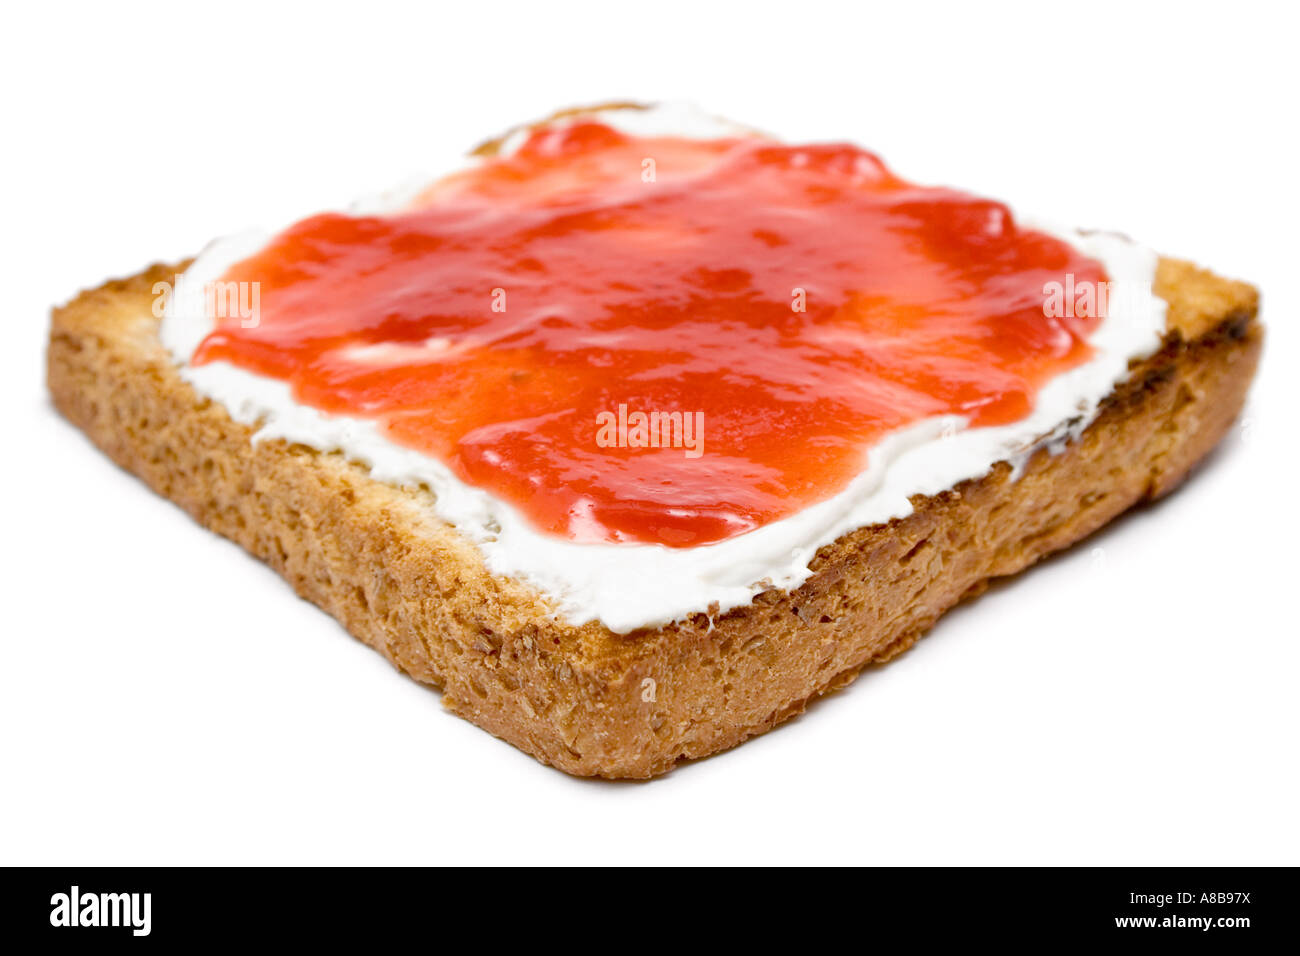 Butter und Marmelade auf eine warme Scheibe Brot isoliert auf einem weißen  Hintergrund geringe Schärfentiefe Stockfotografie - Alamy